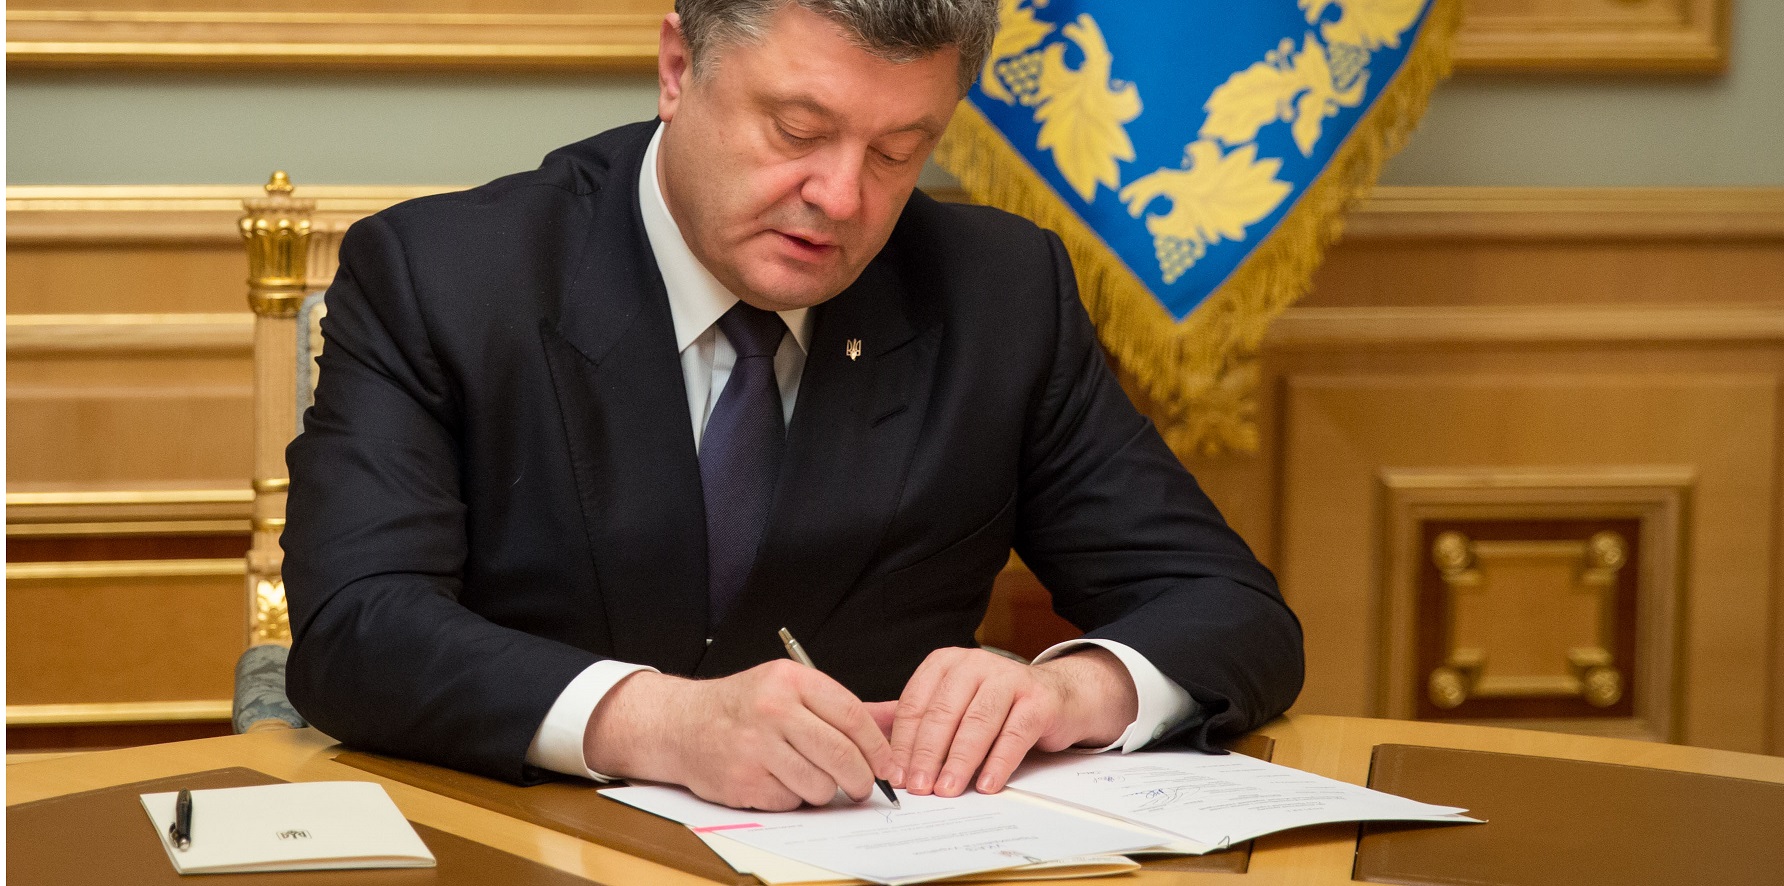 Порошенко подписал указ о стипендиях для детей погибших журналистов